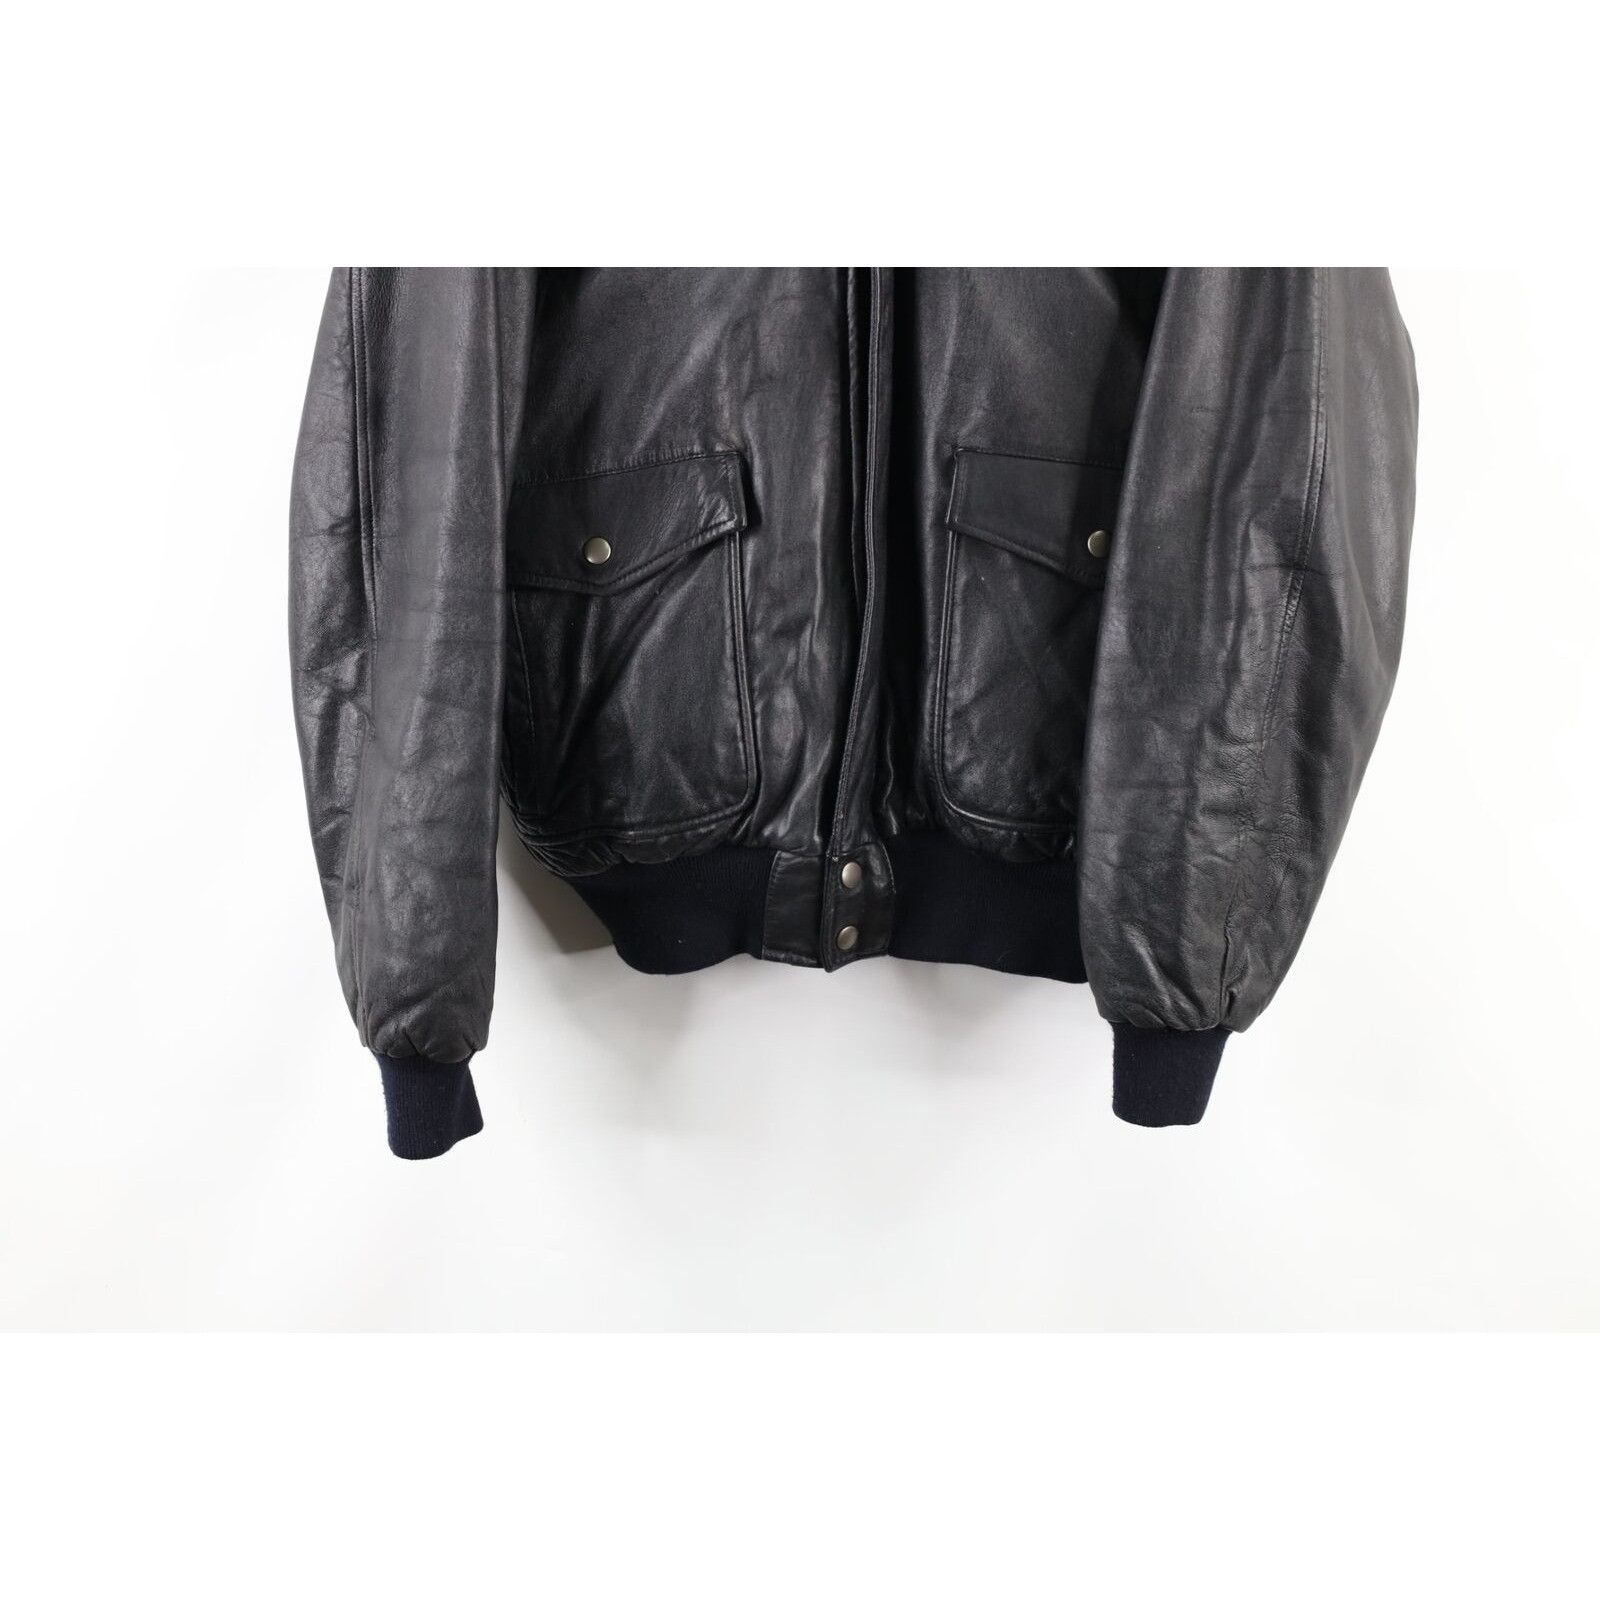 Vintage Vintage Surprise Attack Nuke Japan Souvenir Leather Jacket Size US M / EU 48-50 / 2 - 4 Thumbnail